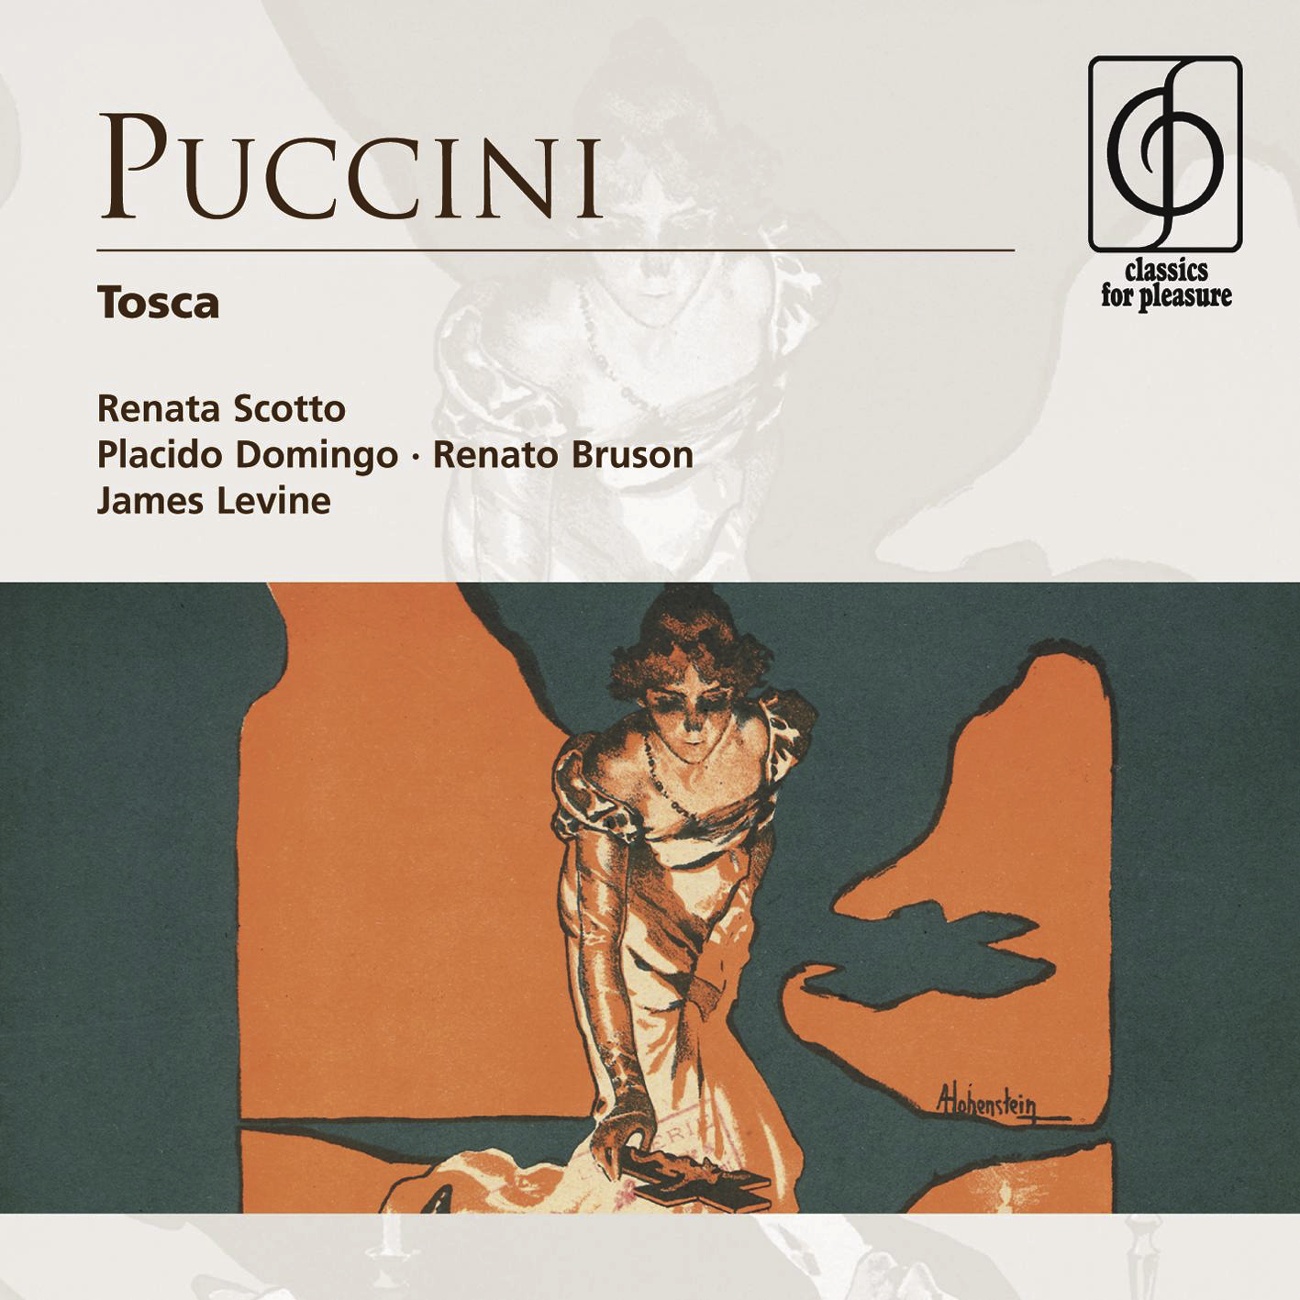 Tosca - Opera in three acts (1997 Digital Remaster), Act II: Tosca è un buon falco! (Scarpia, Sciarrone)